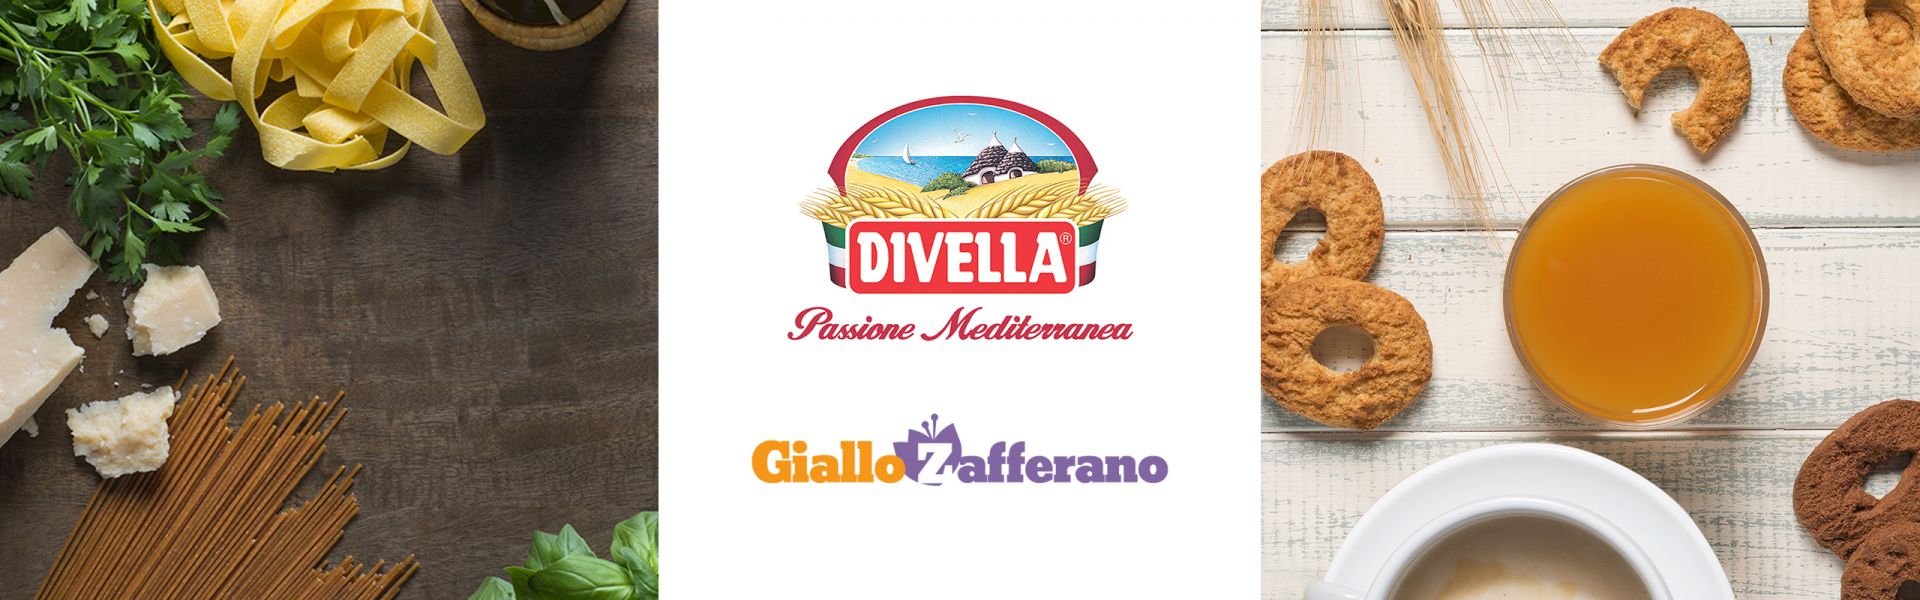 <div class='thumb_wid'><img src='https://www.divella.it/wp-content/uploads/2022/12/pasta-e-biscotti-divella-nelle-ricette-di-giallo-zafferano.jpg'></div><div class='rightwid'><div class='datel'>14 July 2020</div> Divella pasta & biscuits in Giallo Zafferano recipes</div>